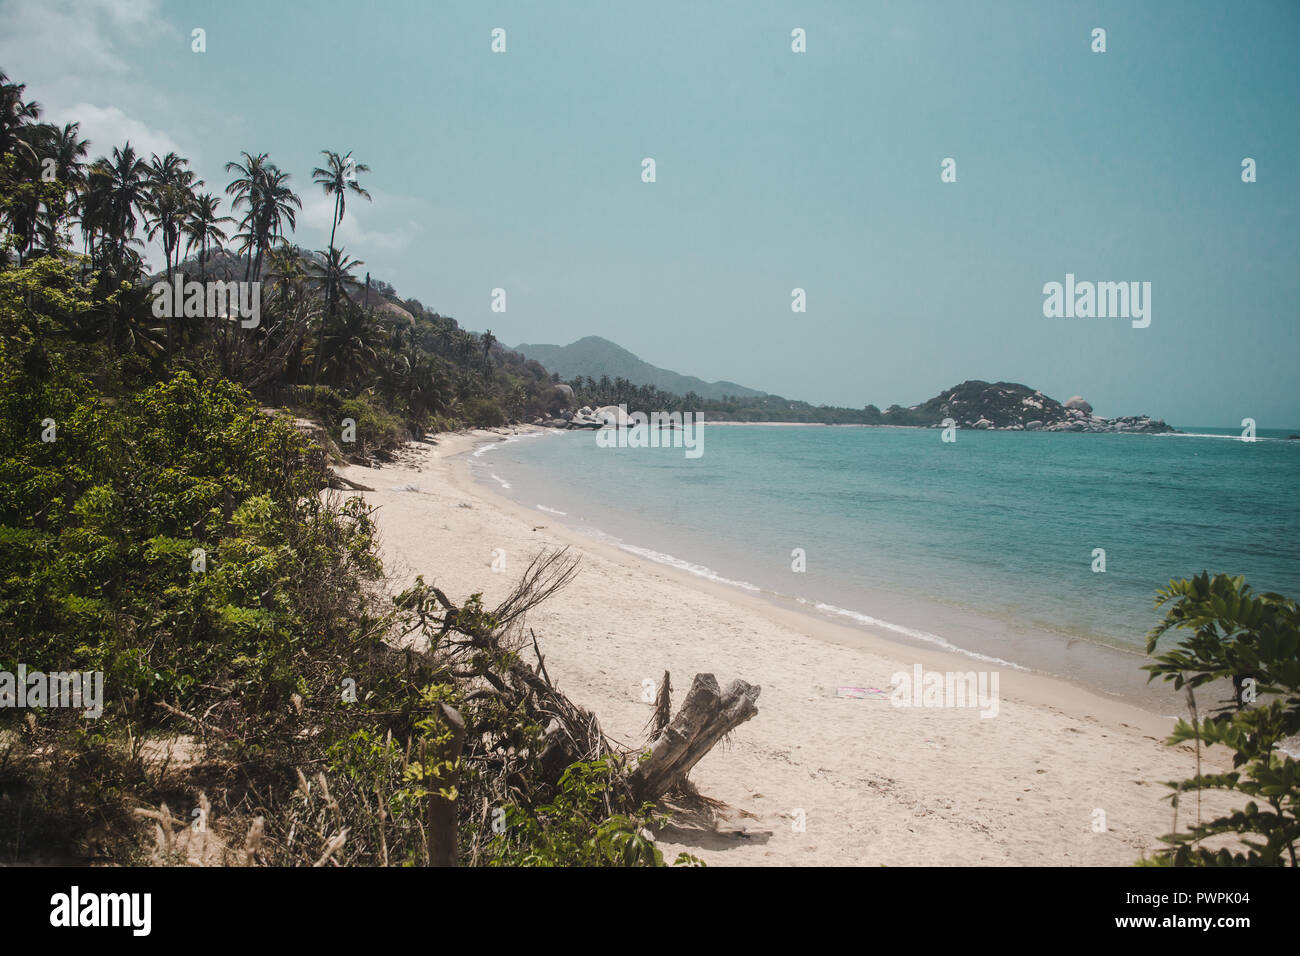 Unberührte weiße Sand Strand von Tayrona Nationalpark durch den Dschungel an der karibischen Küste Kolumbiens umgeben Stockfoto